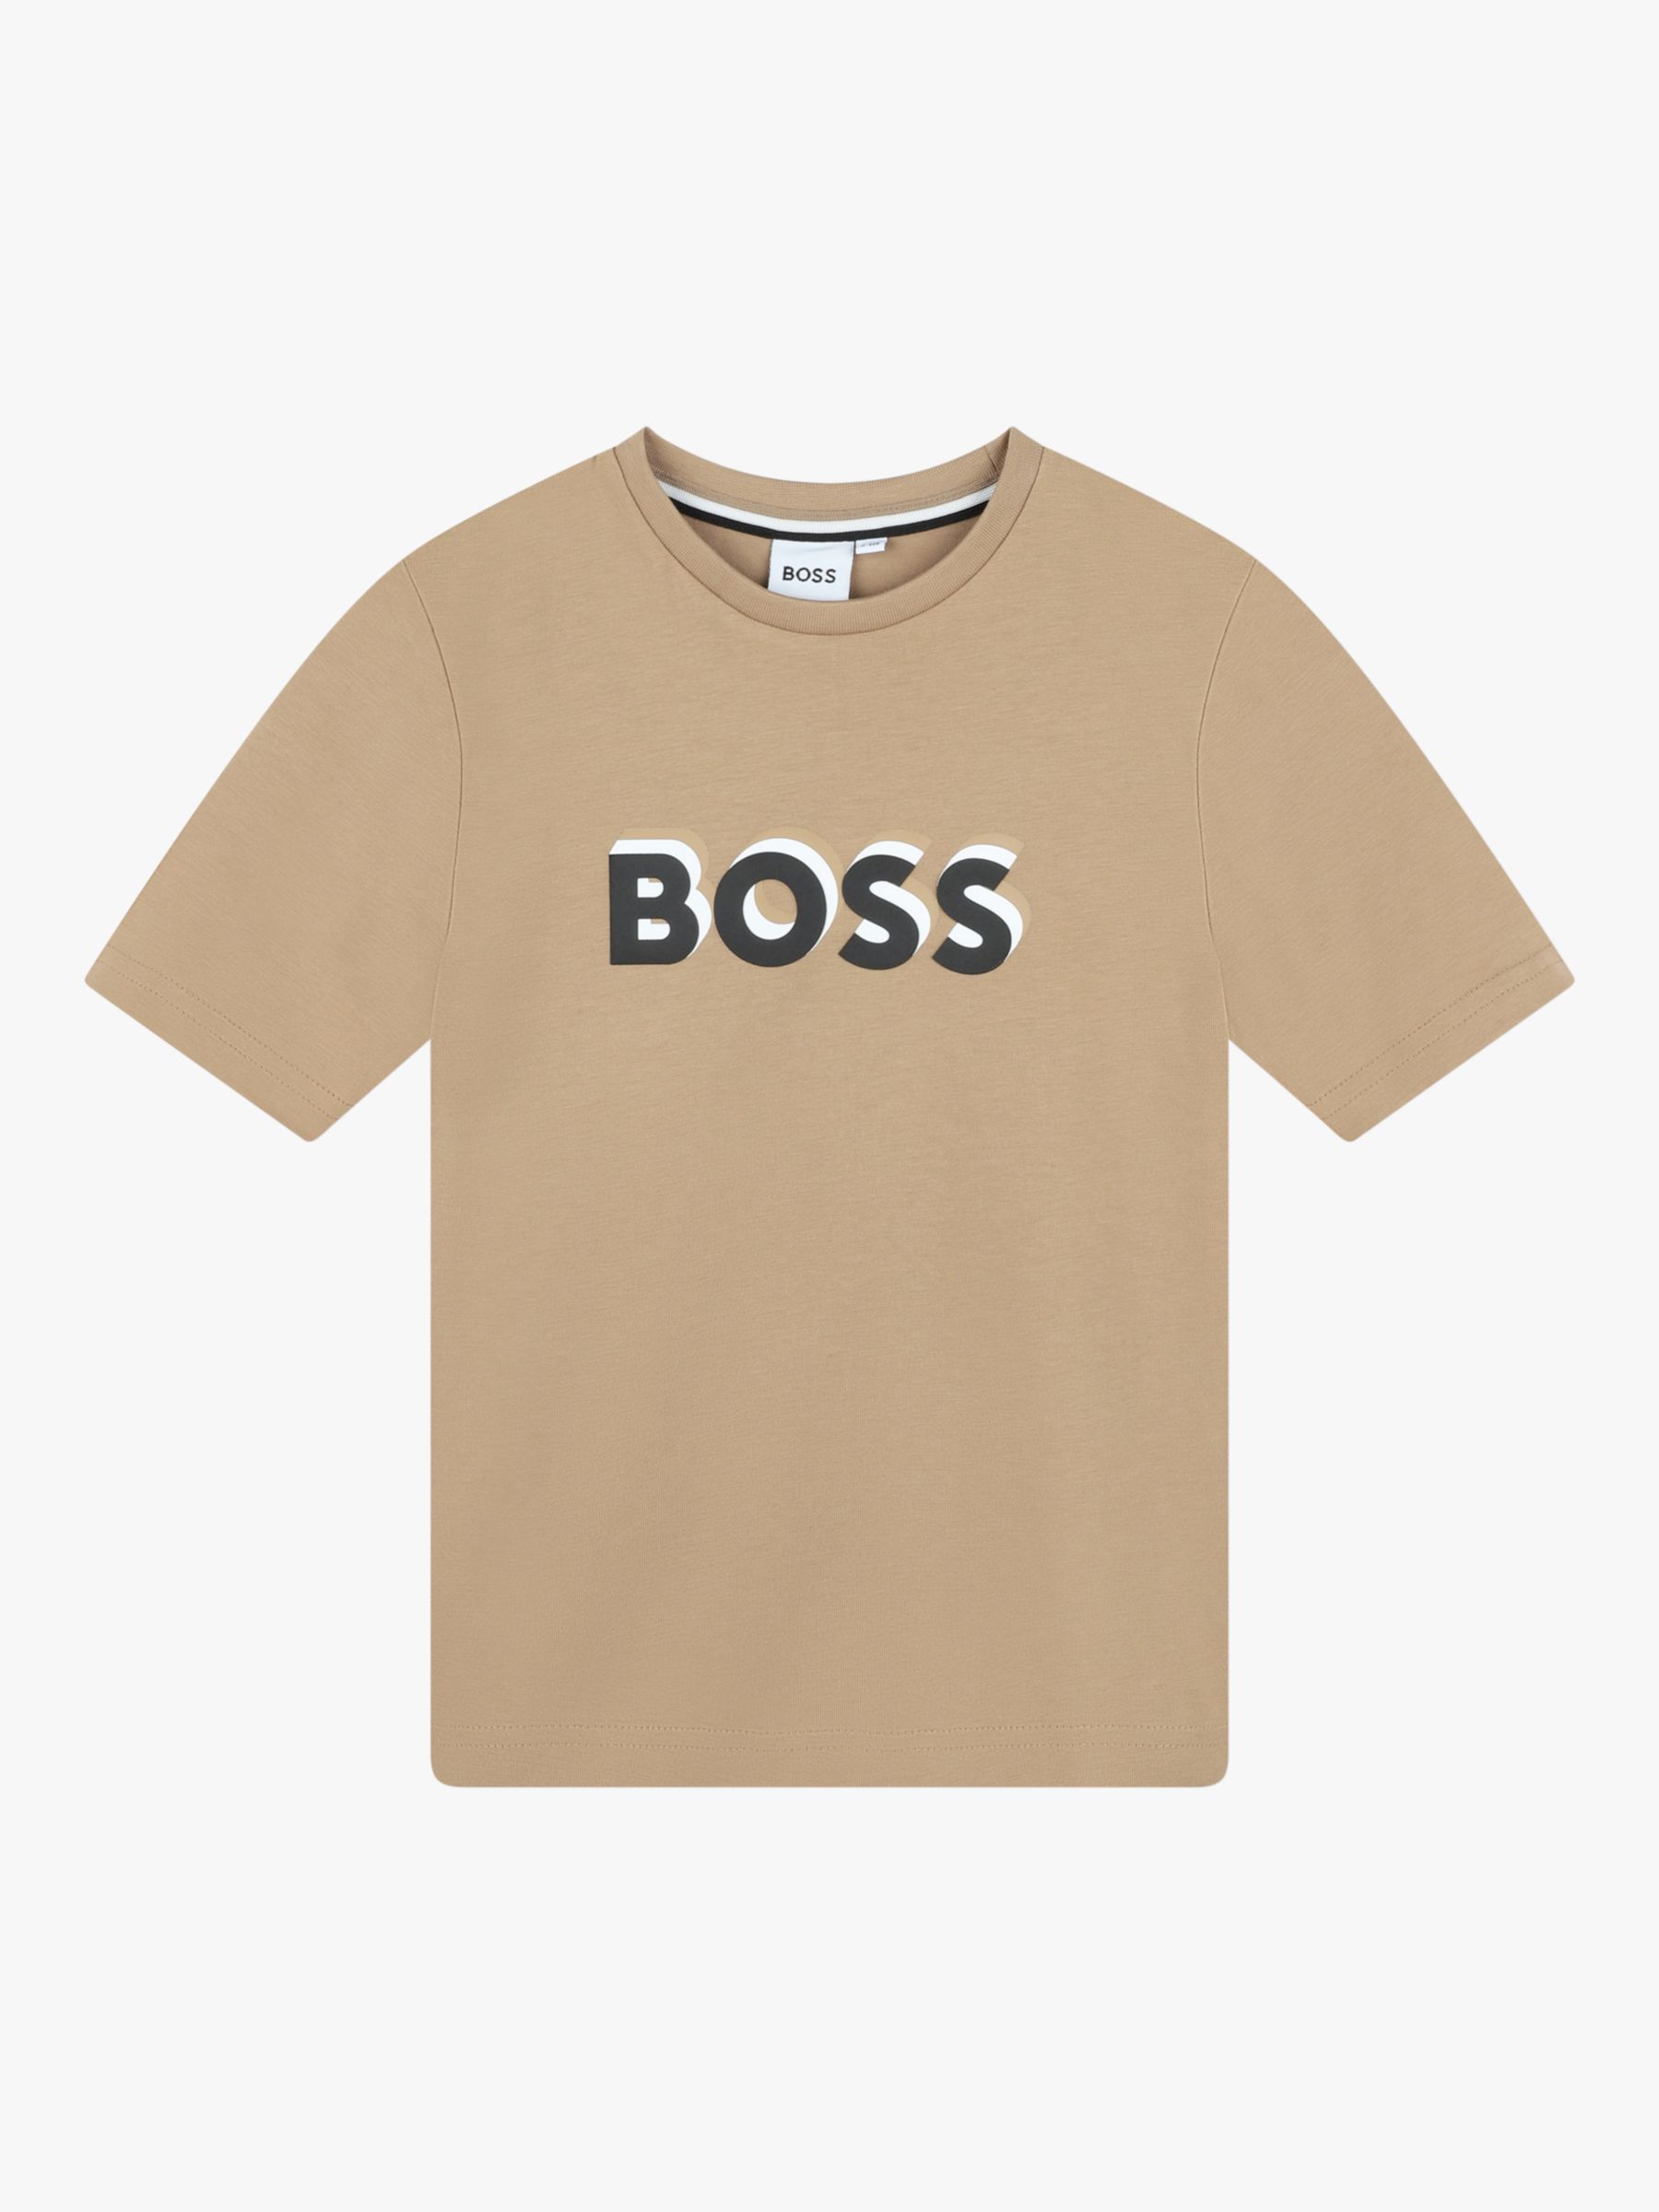 BOSS Kids' Embossed Logo Short Sleeve T-Shirt, Chocolate, 4 years